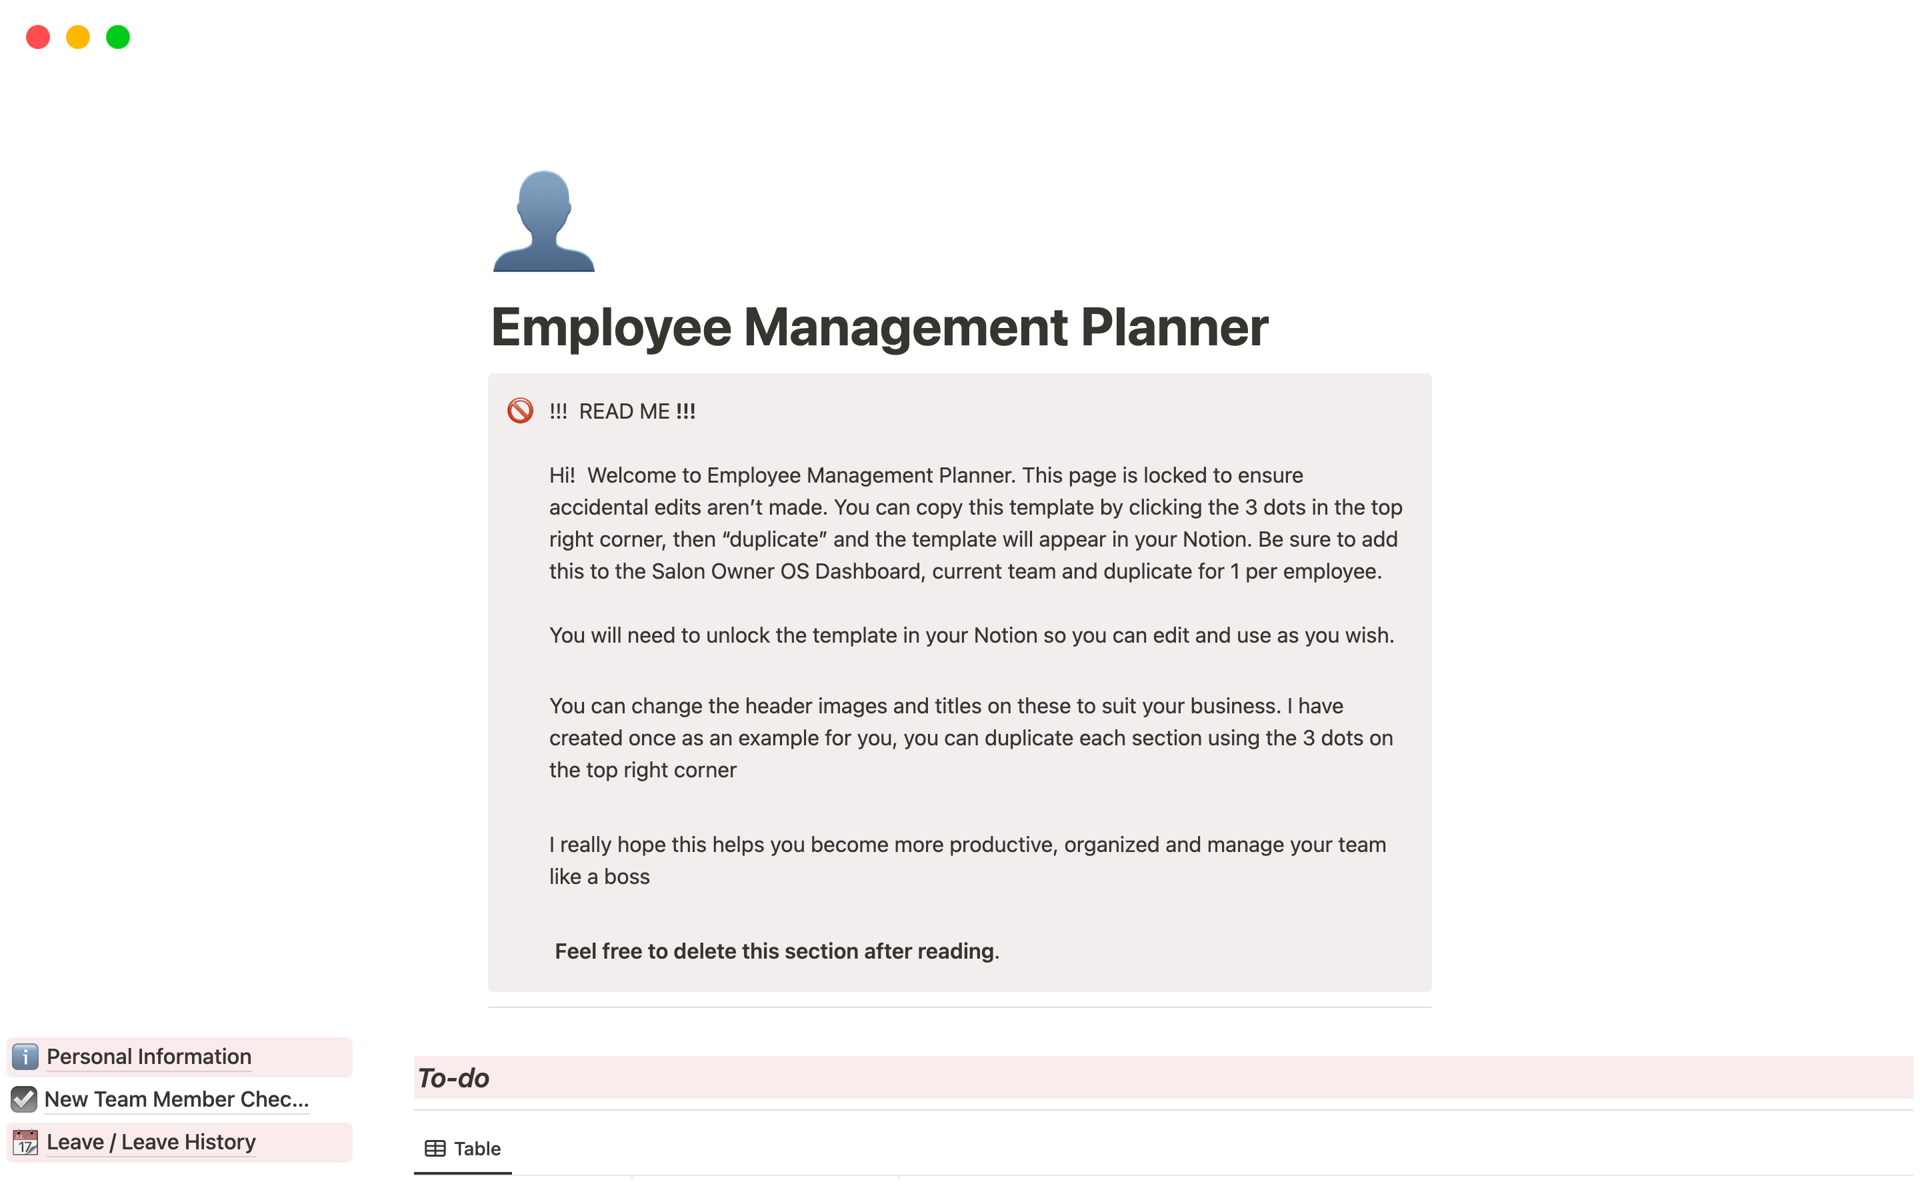 Uma prévia do modelo para Employee Management Planner